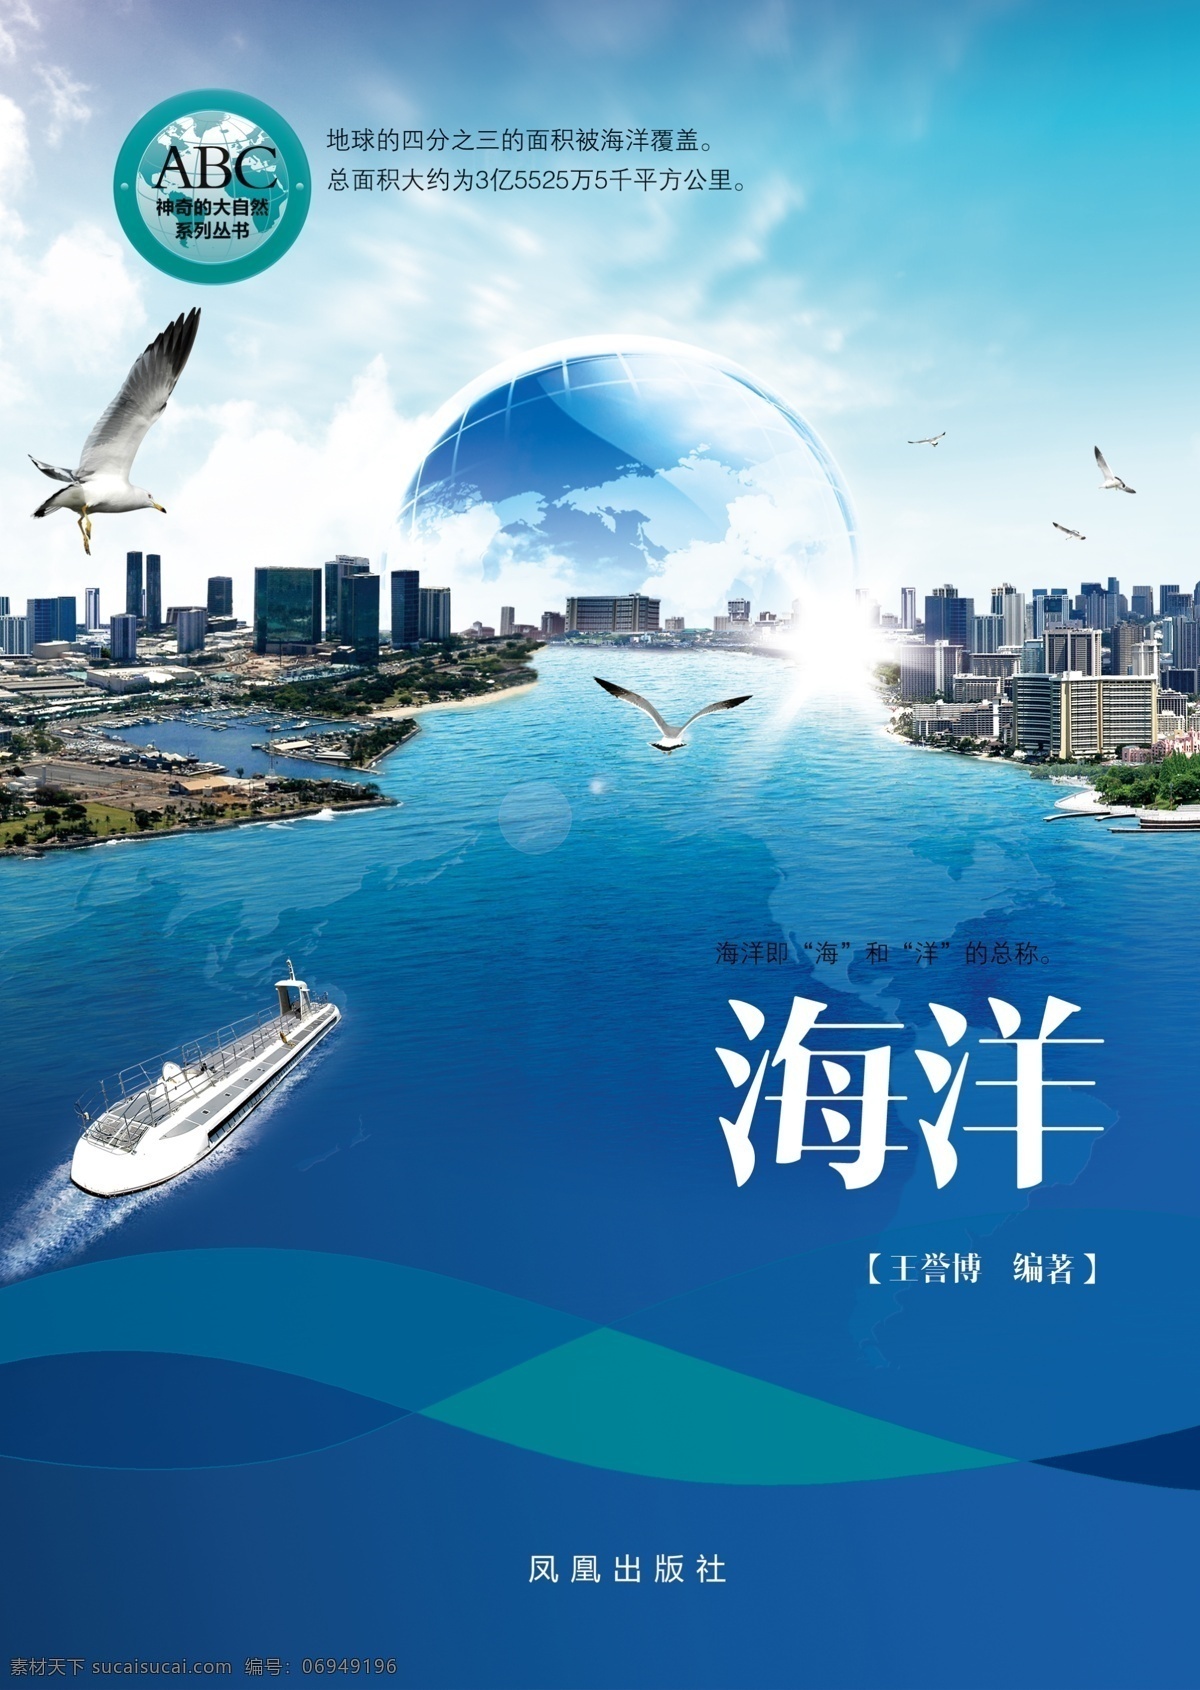 书籍 封面 地球 轮船 城市 蓝色 海洋 海鸥 封皮 飞翔 曲线 现代 时尚 画册设计 白色